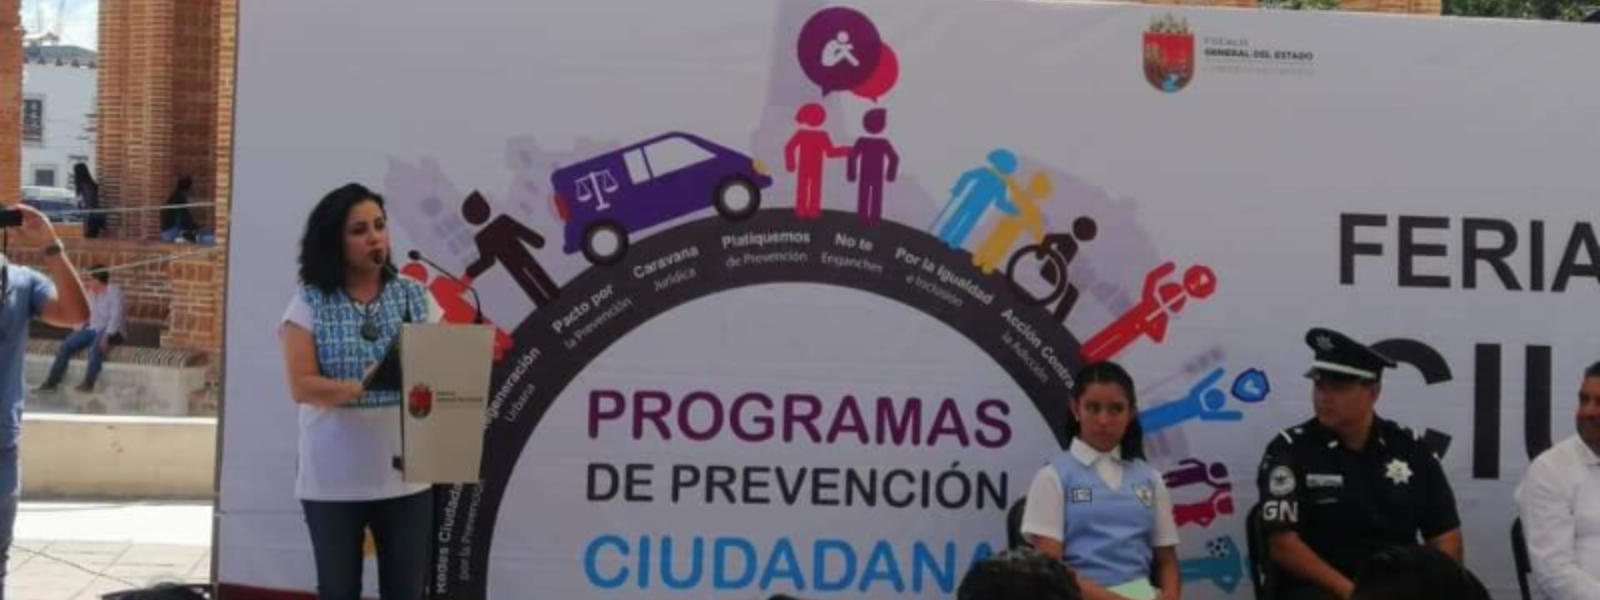 Feria Seguridad y Justicia en Chiapa de Corzo